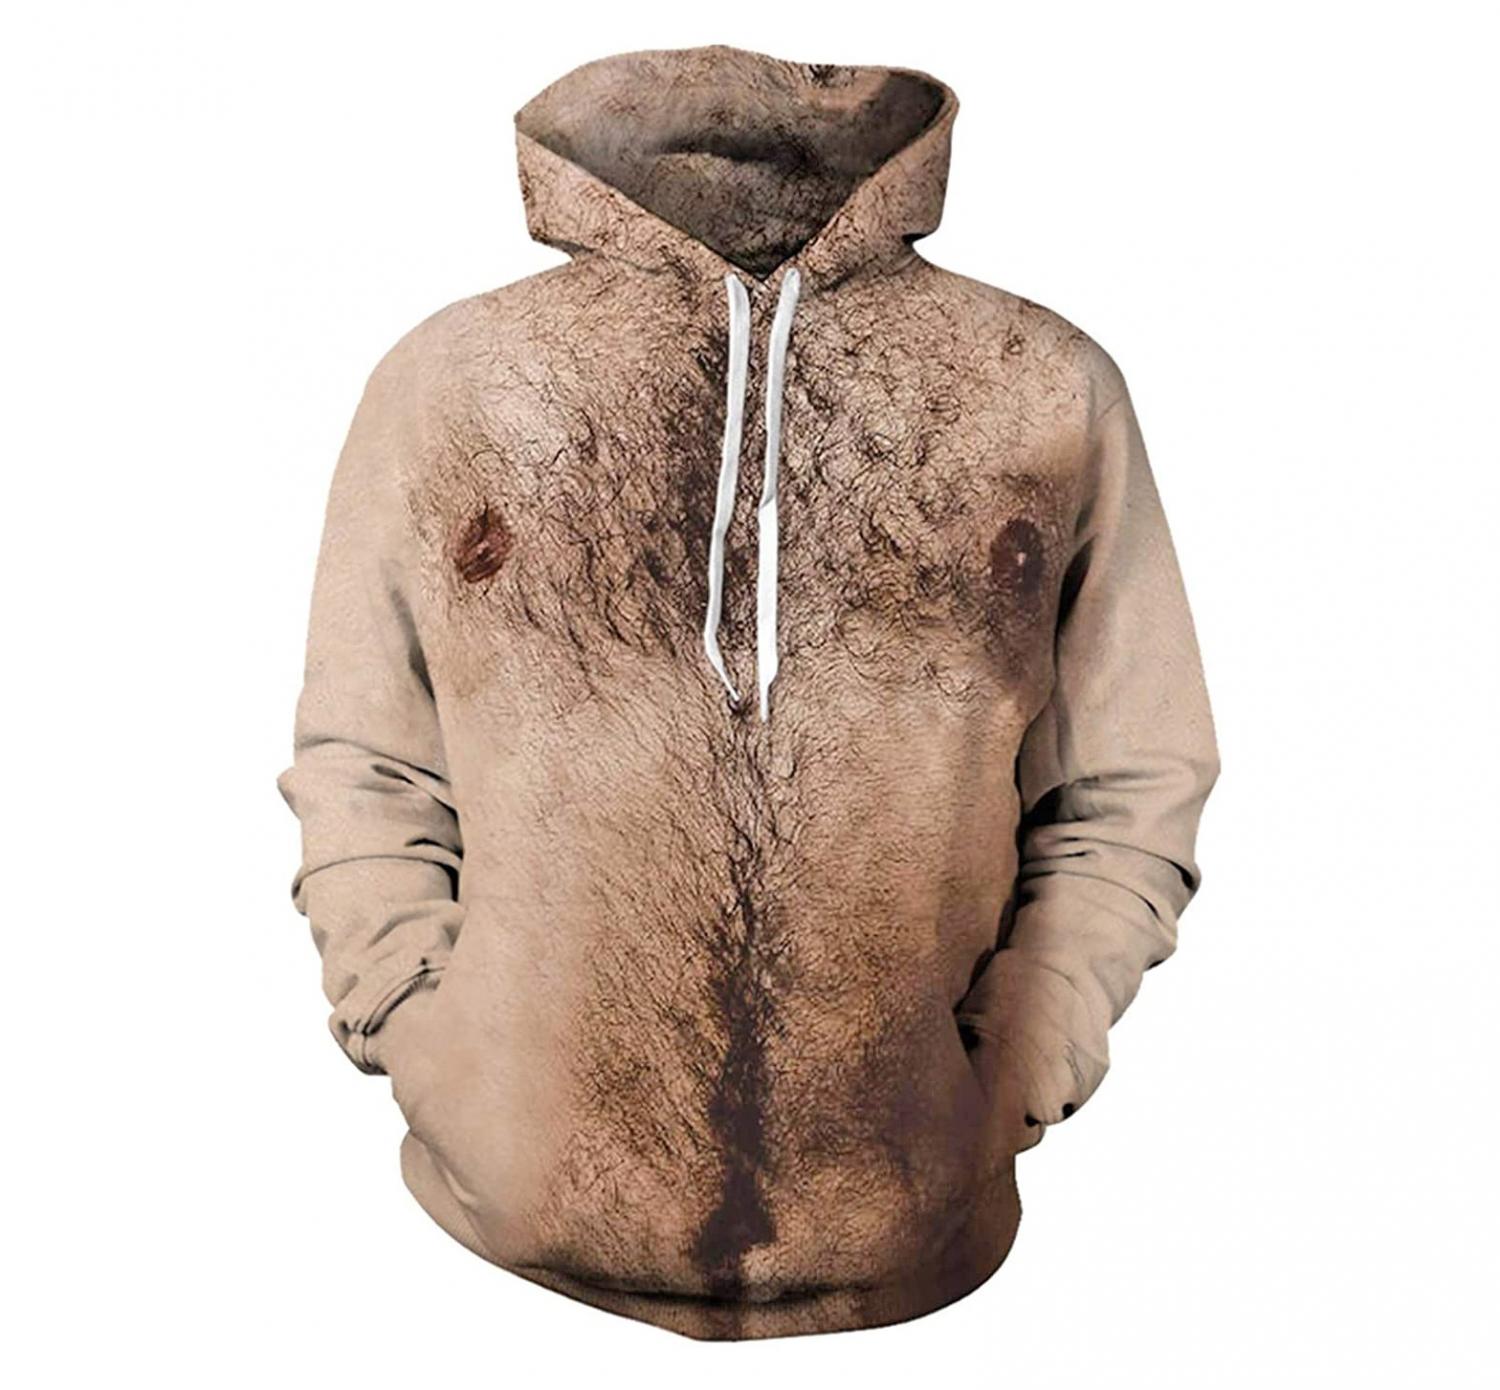 Hairy chest hoodie sweatshirt